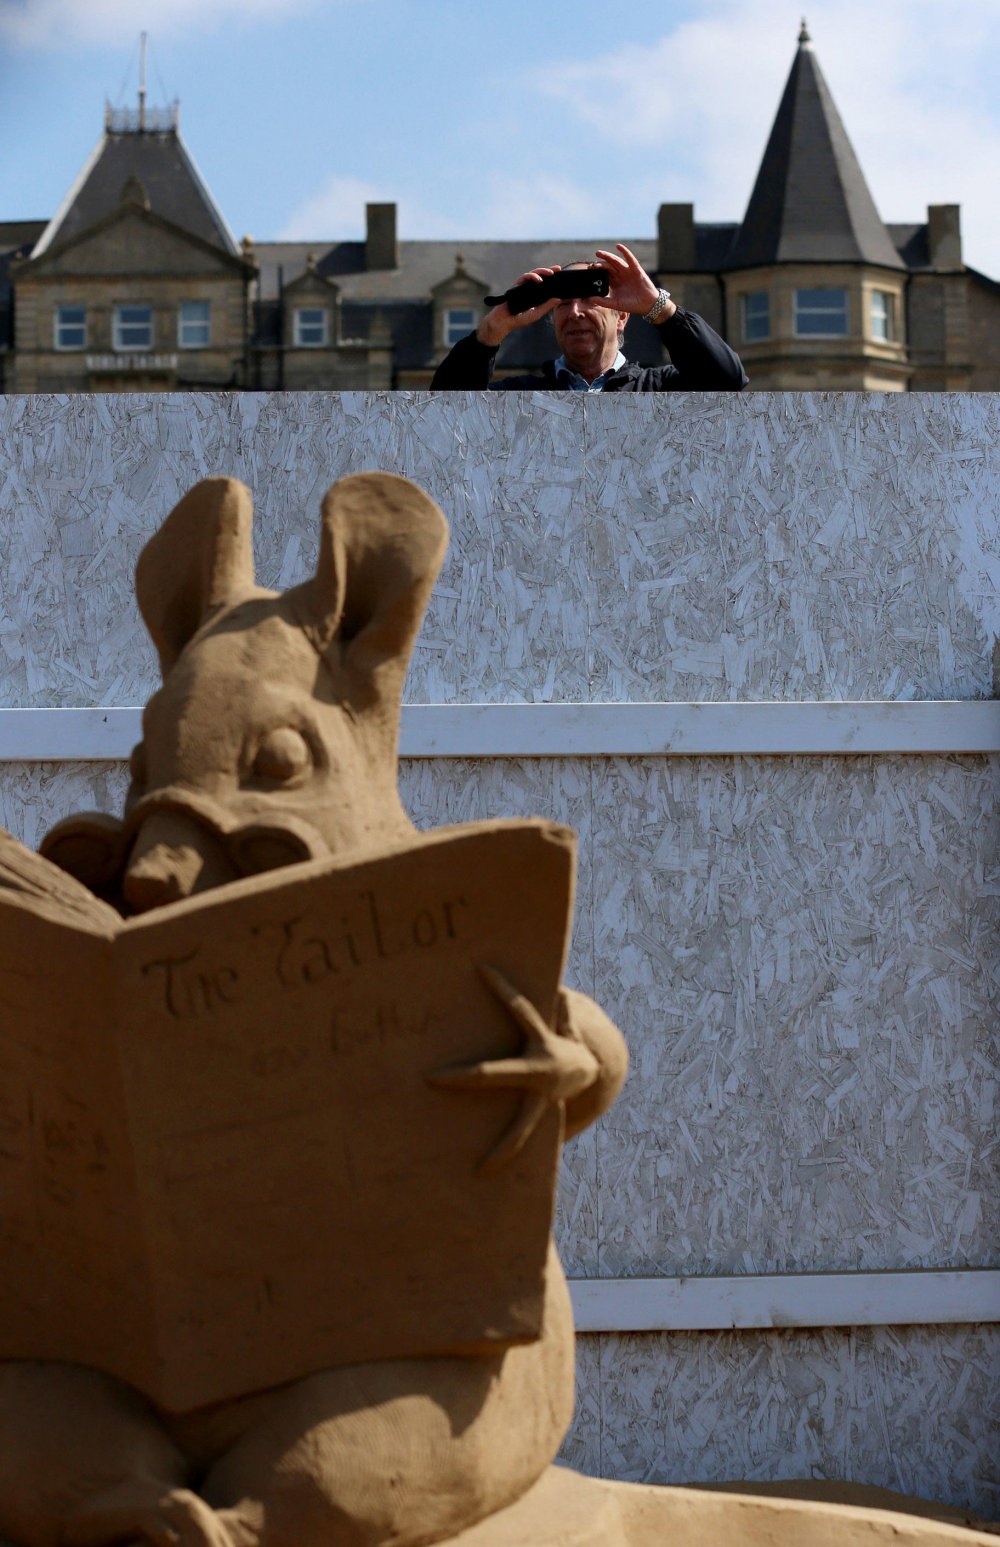 Фестиваль скульптуры из песка в Великобритании